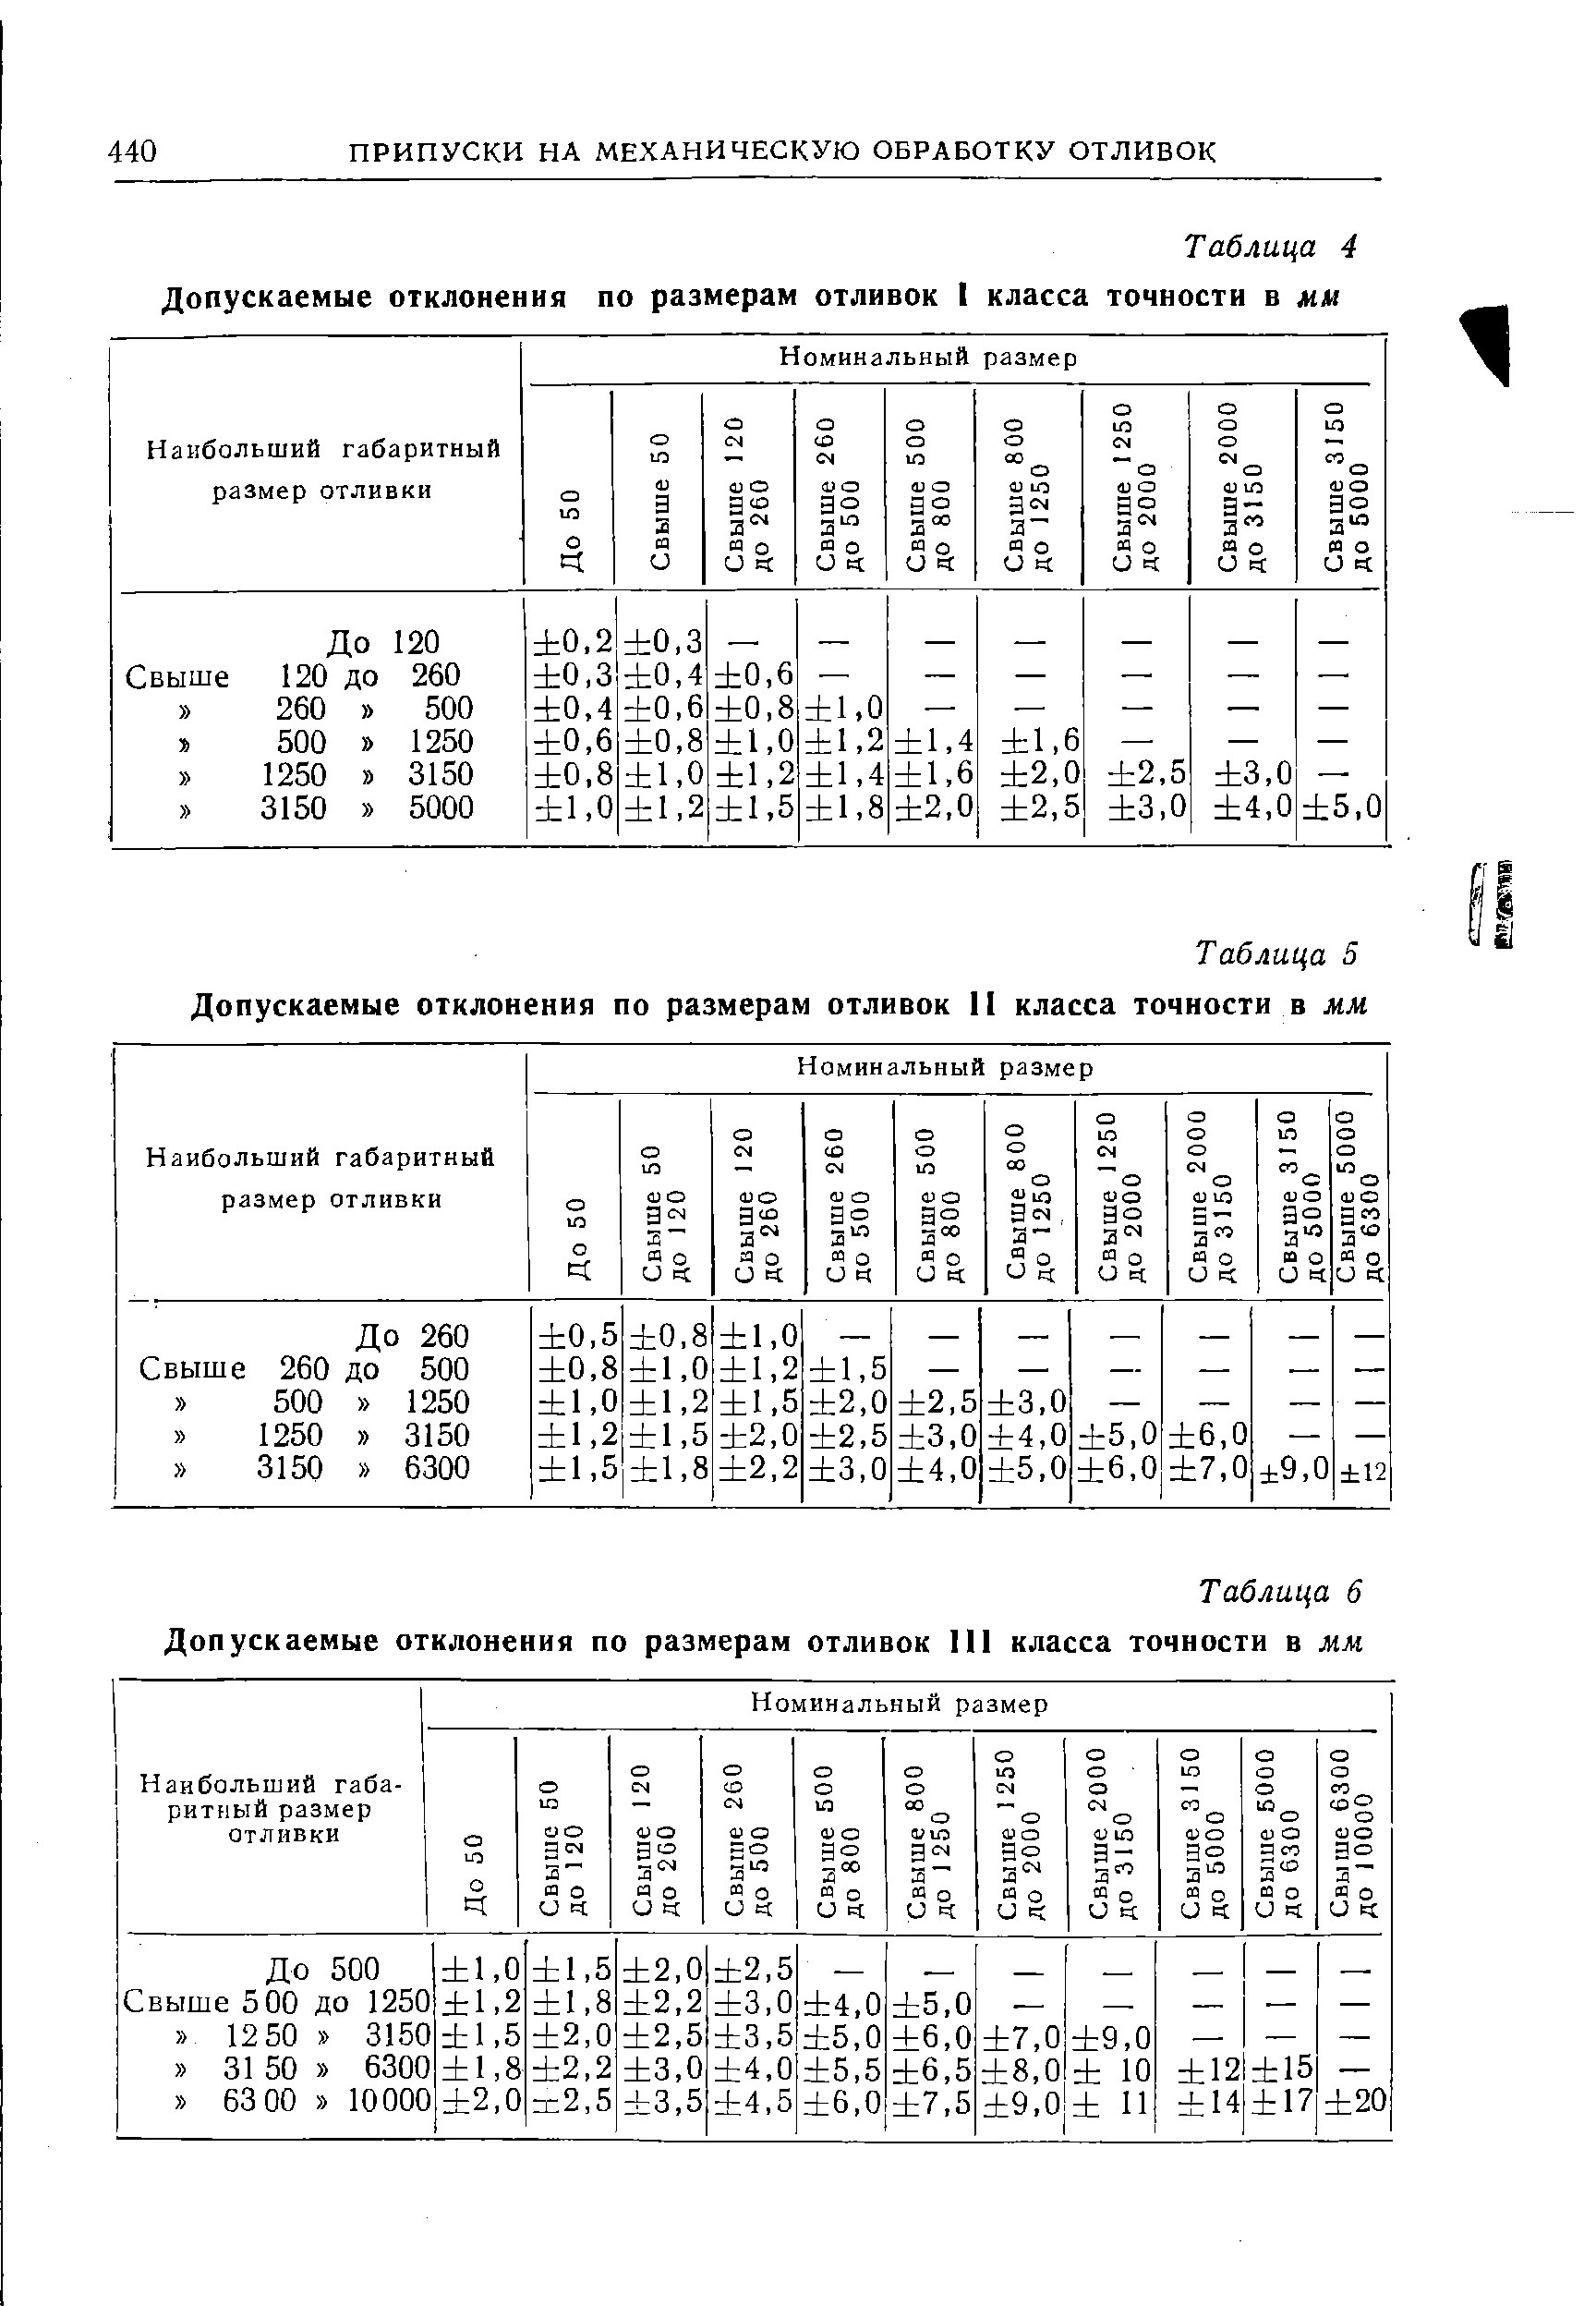 Таблица 5 Допускаемые отклонения по размерам отливок II класса точности в мм
